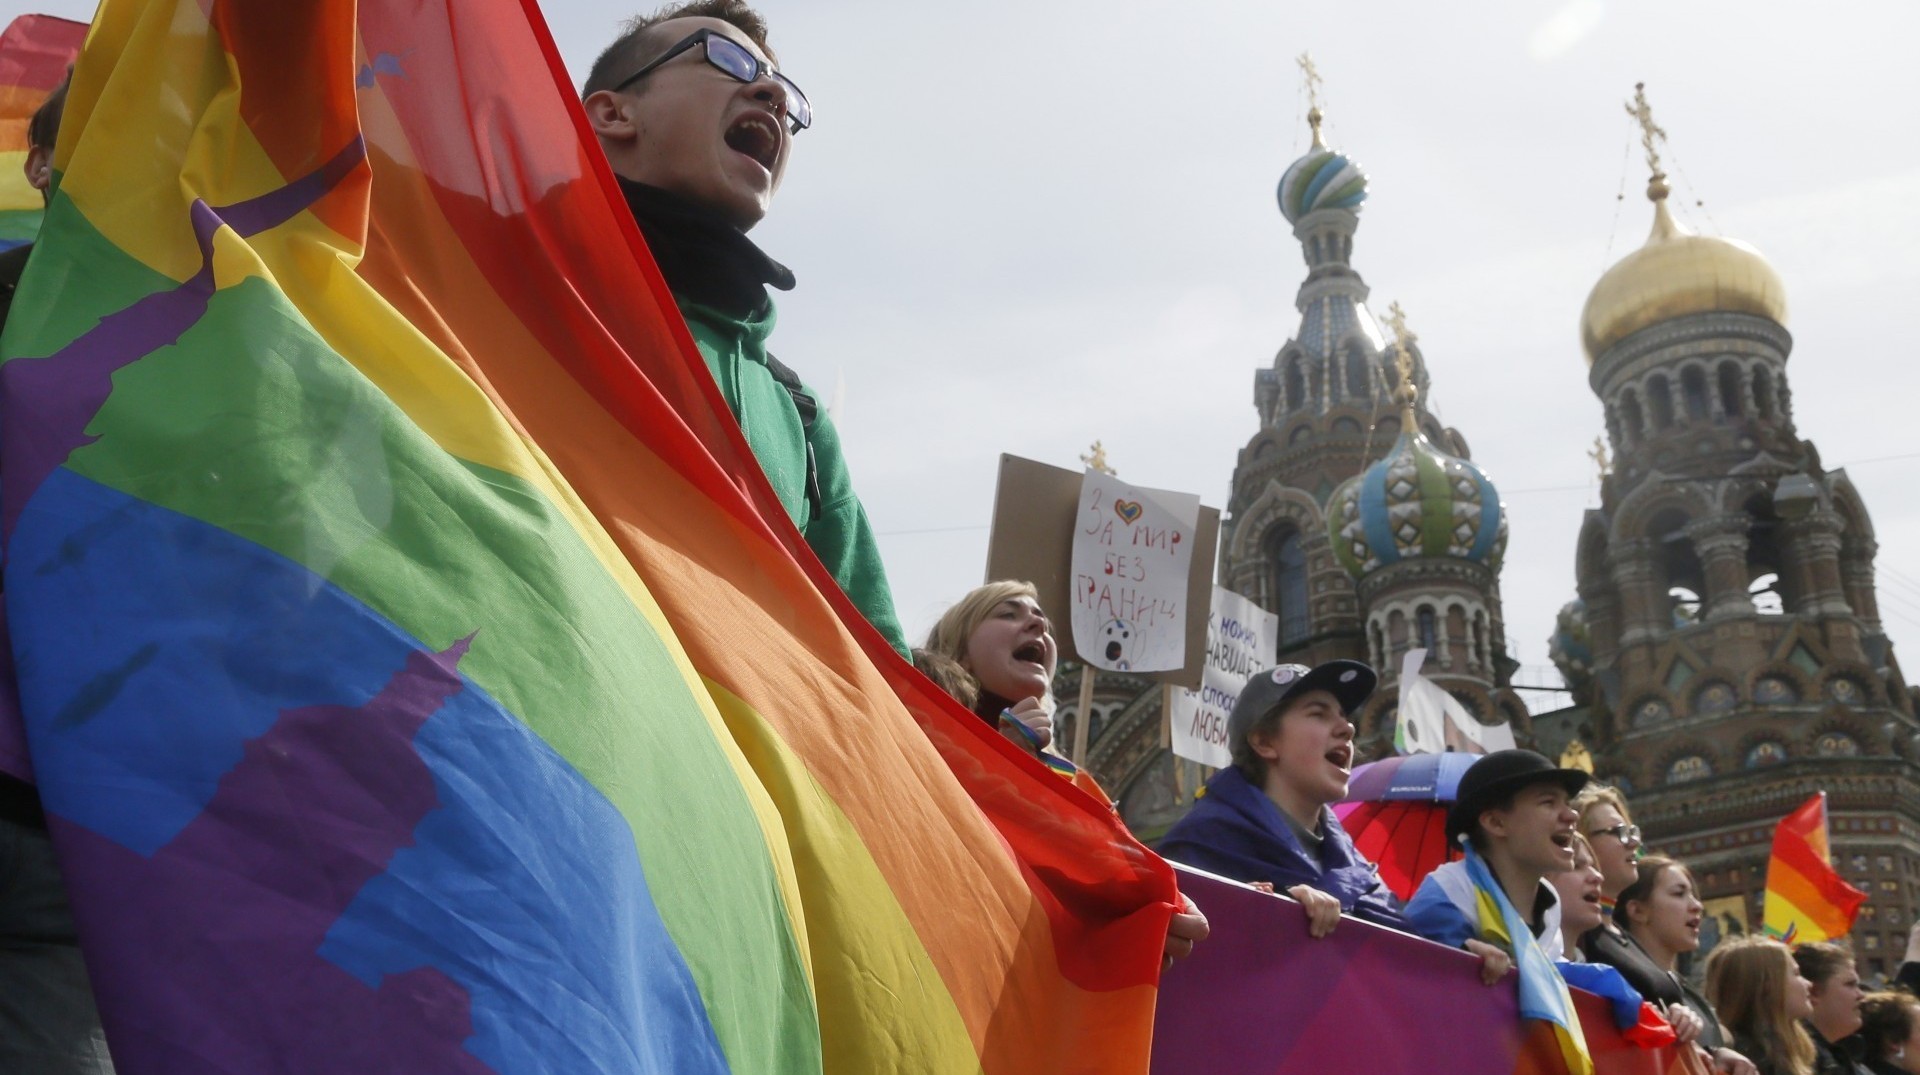 Activistas por los derechos de los homosexuales gritan consignas durante una marcha tradicional del Primero de Mayo en San Petersburgo (AP Photo/Dmitry Lovetsky)